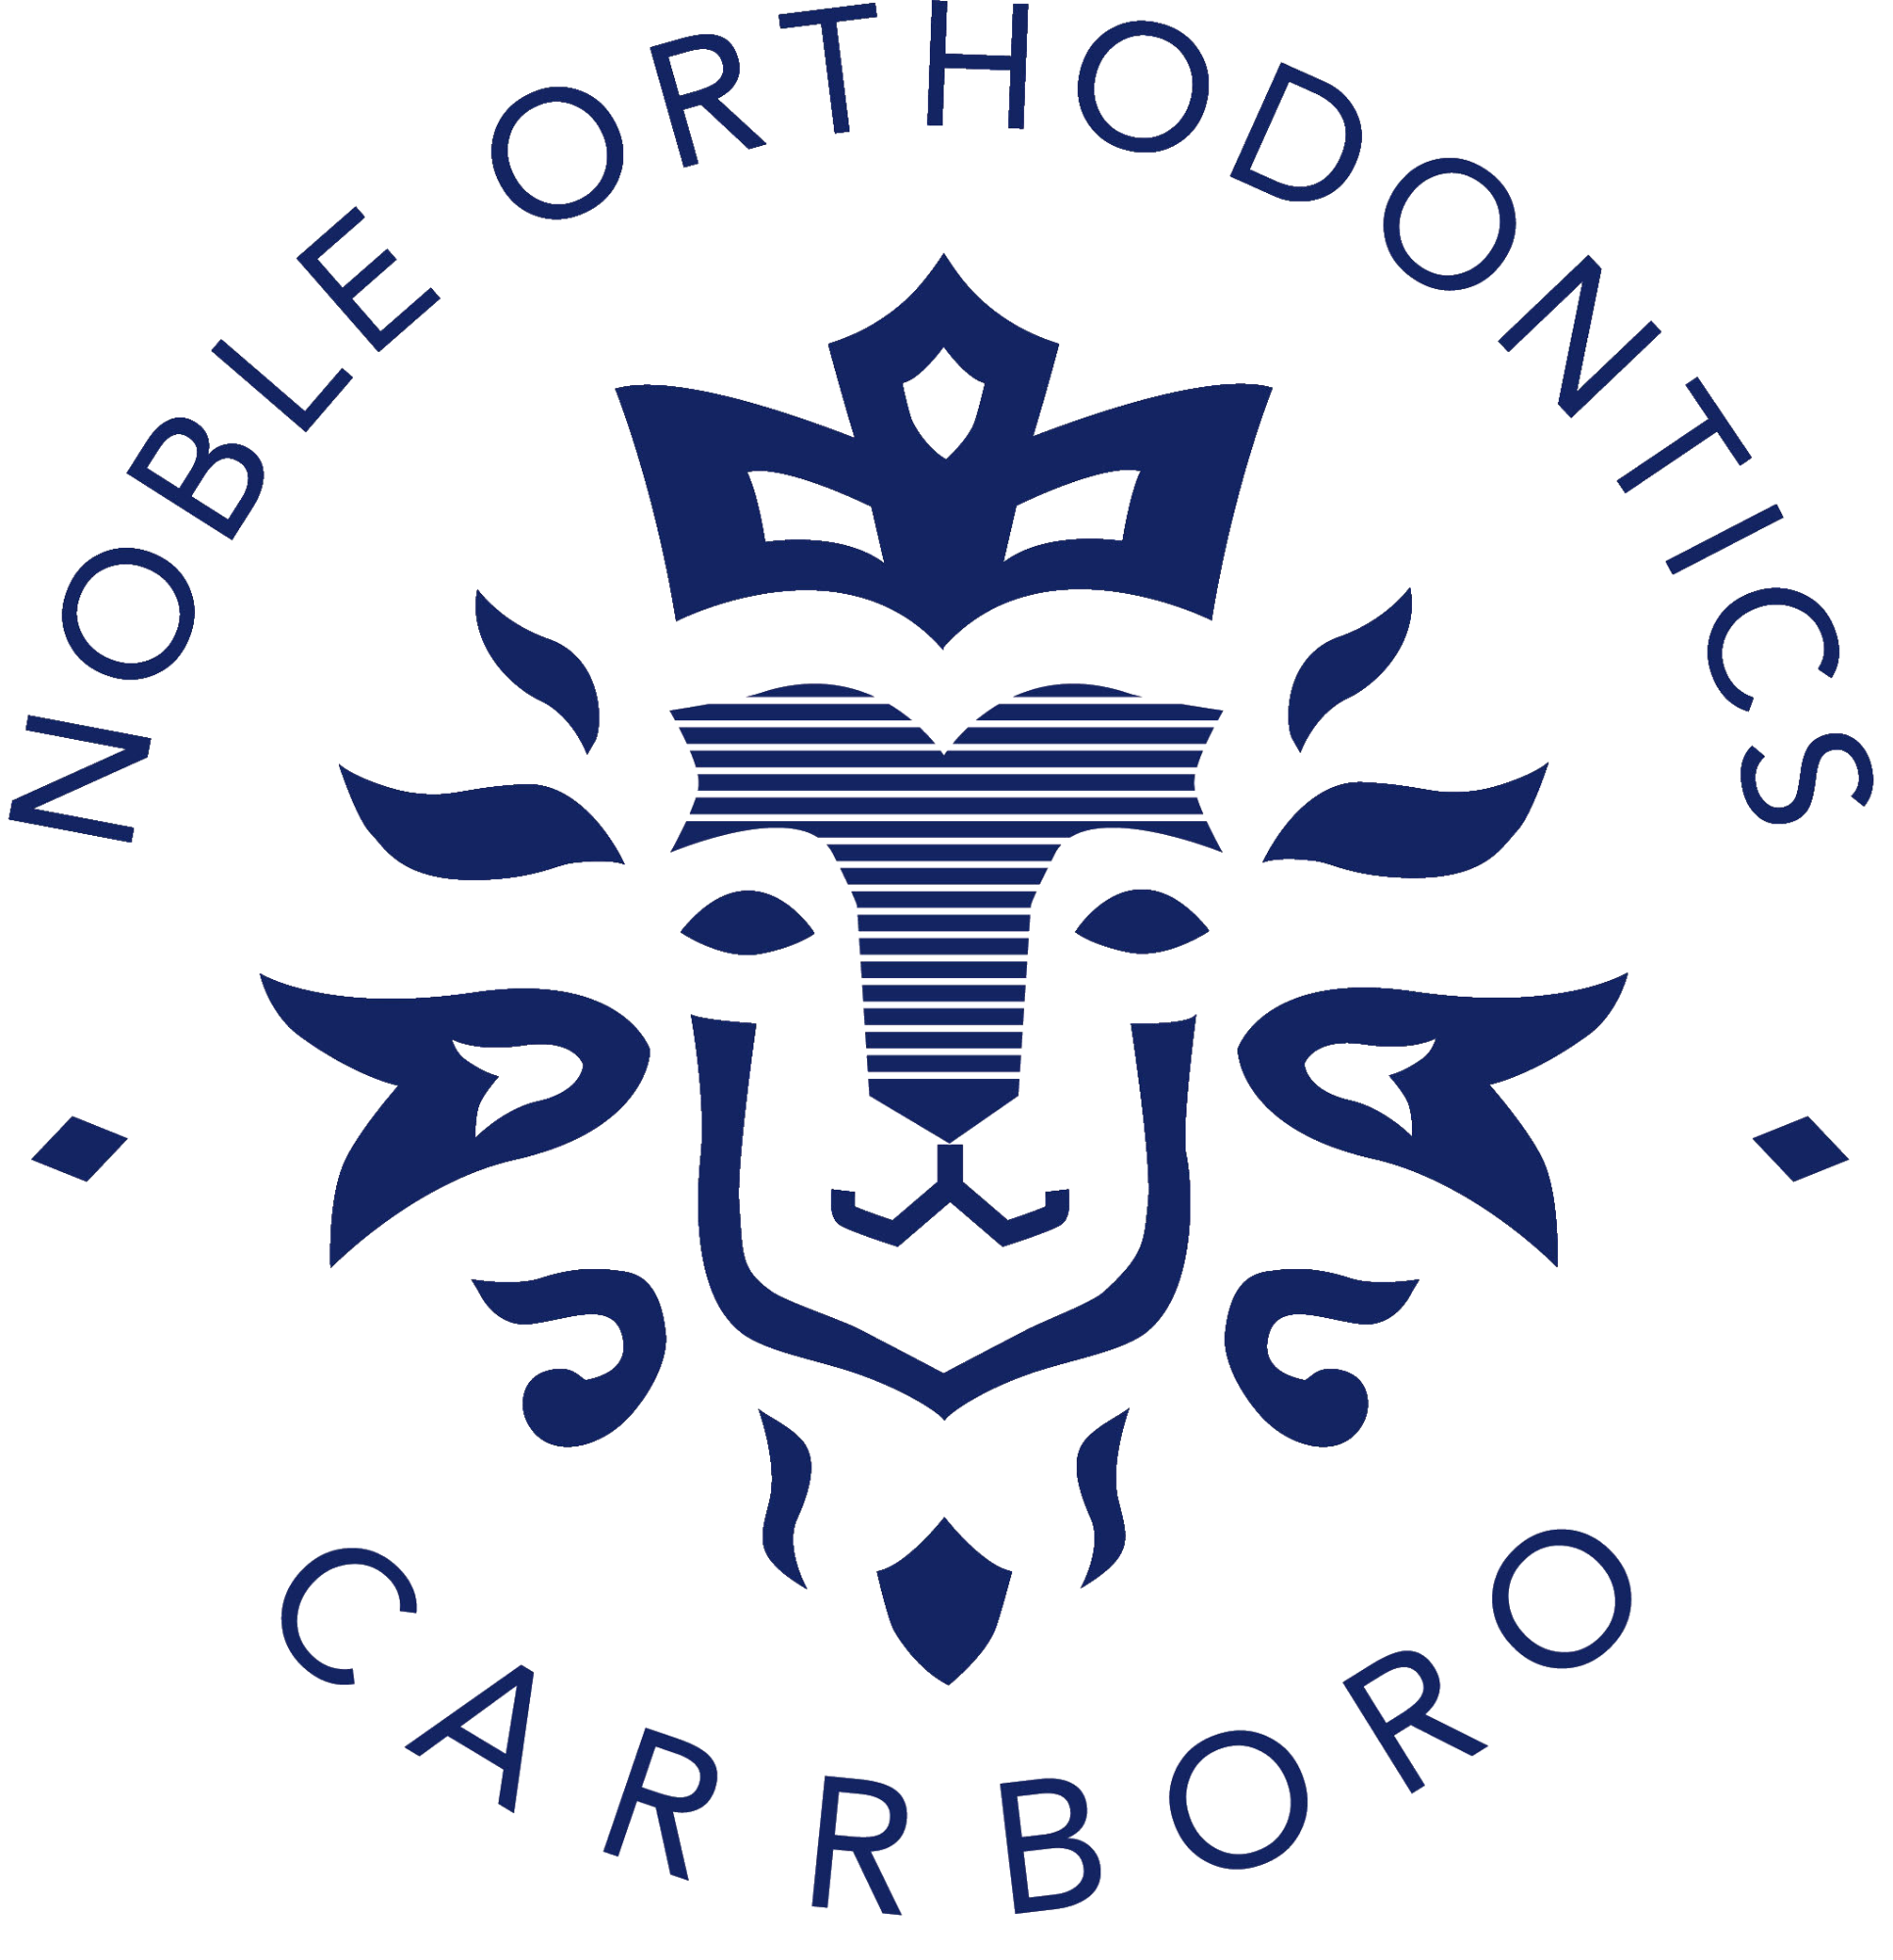 noble orthodontics logo